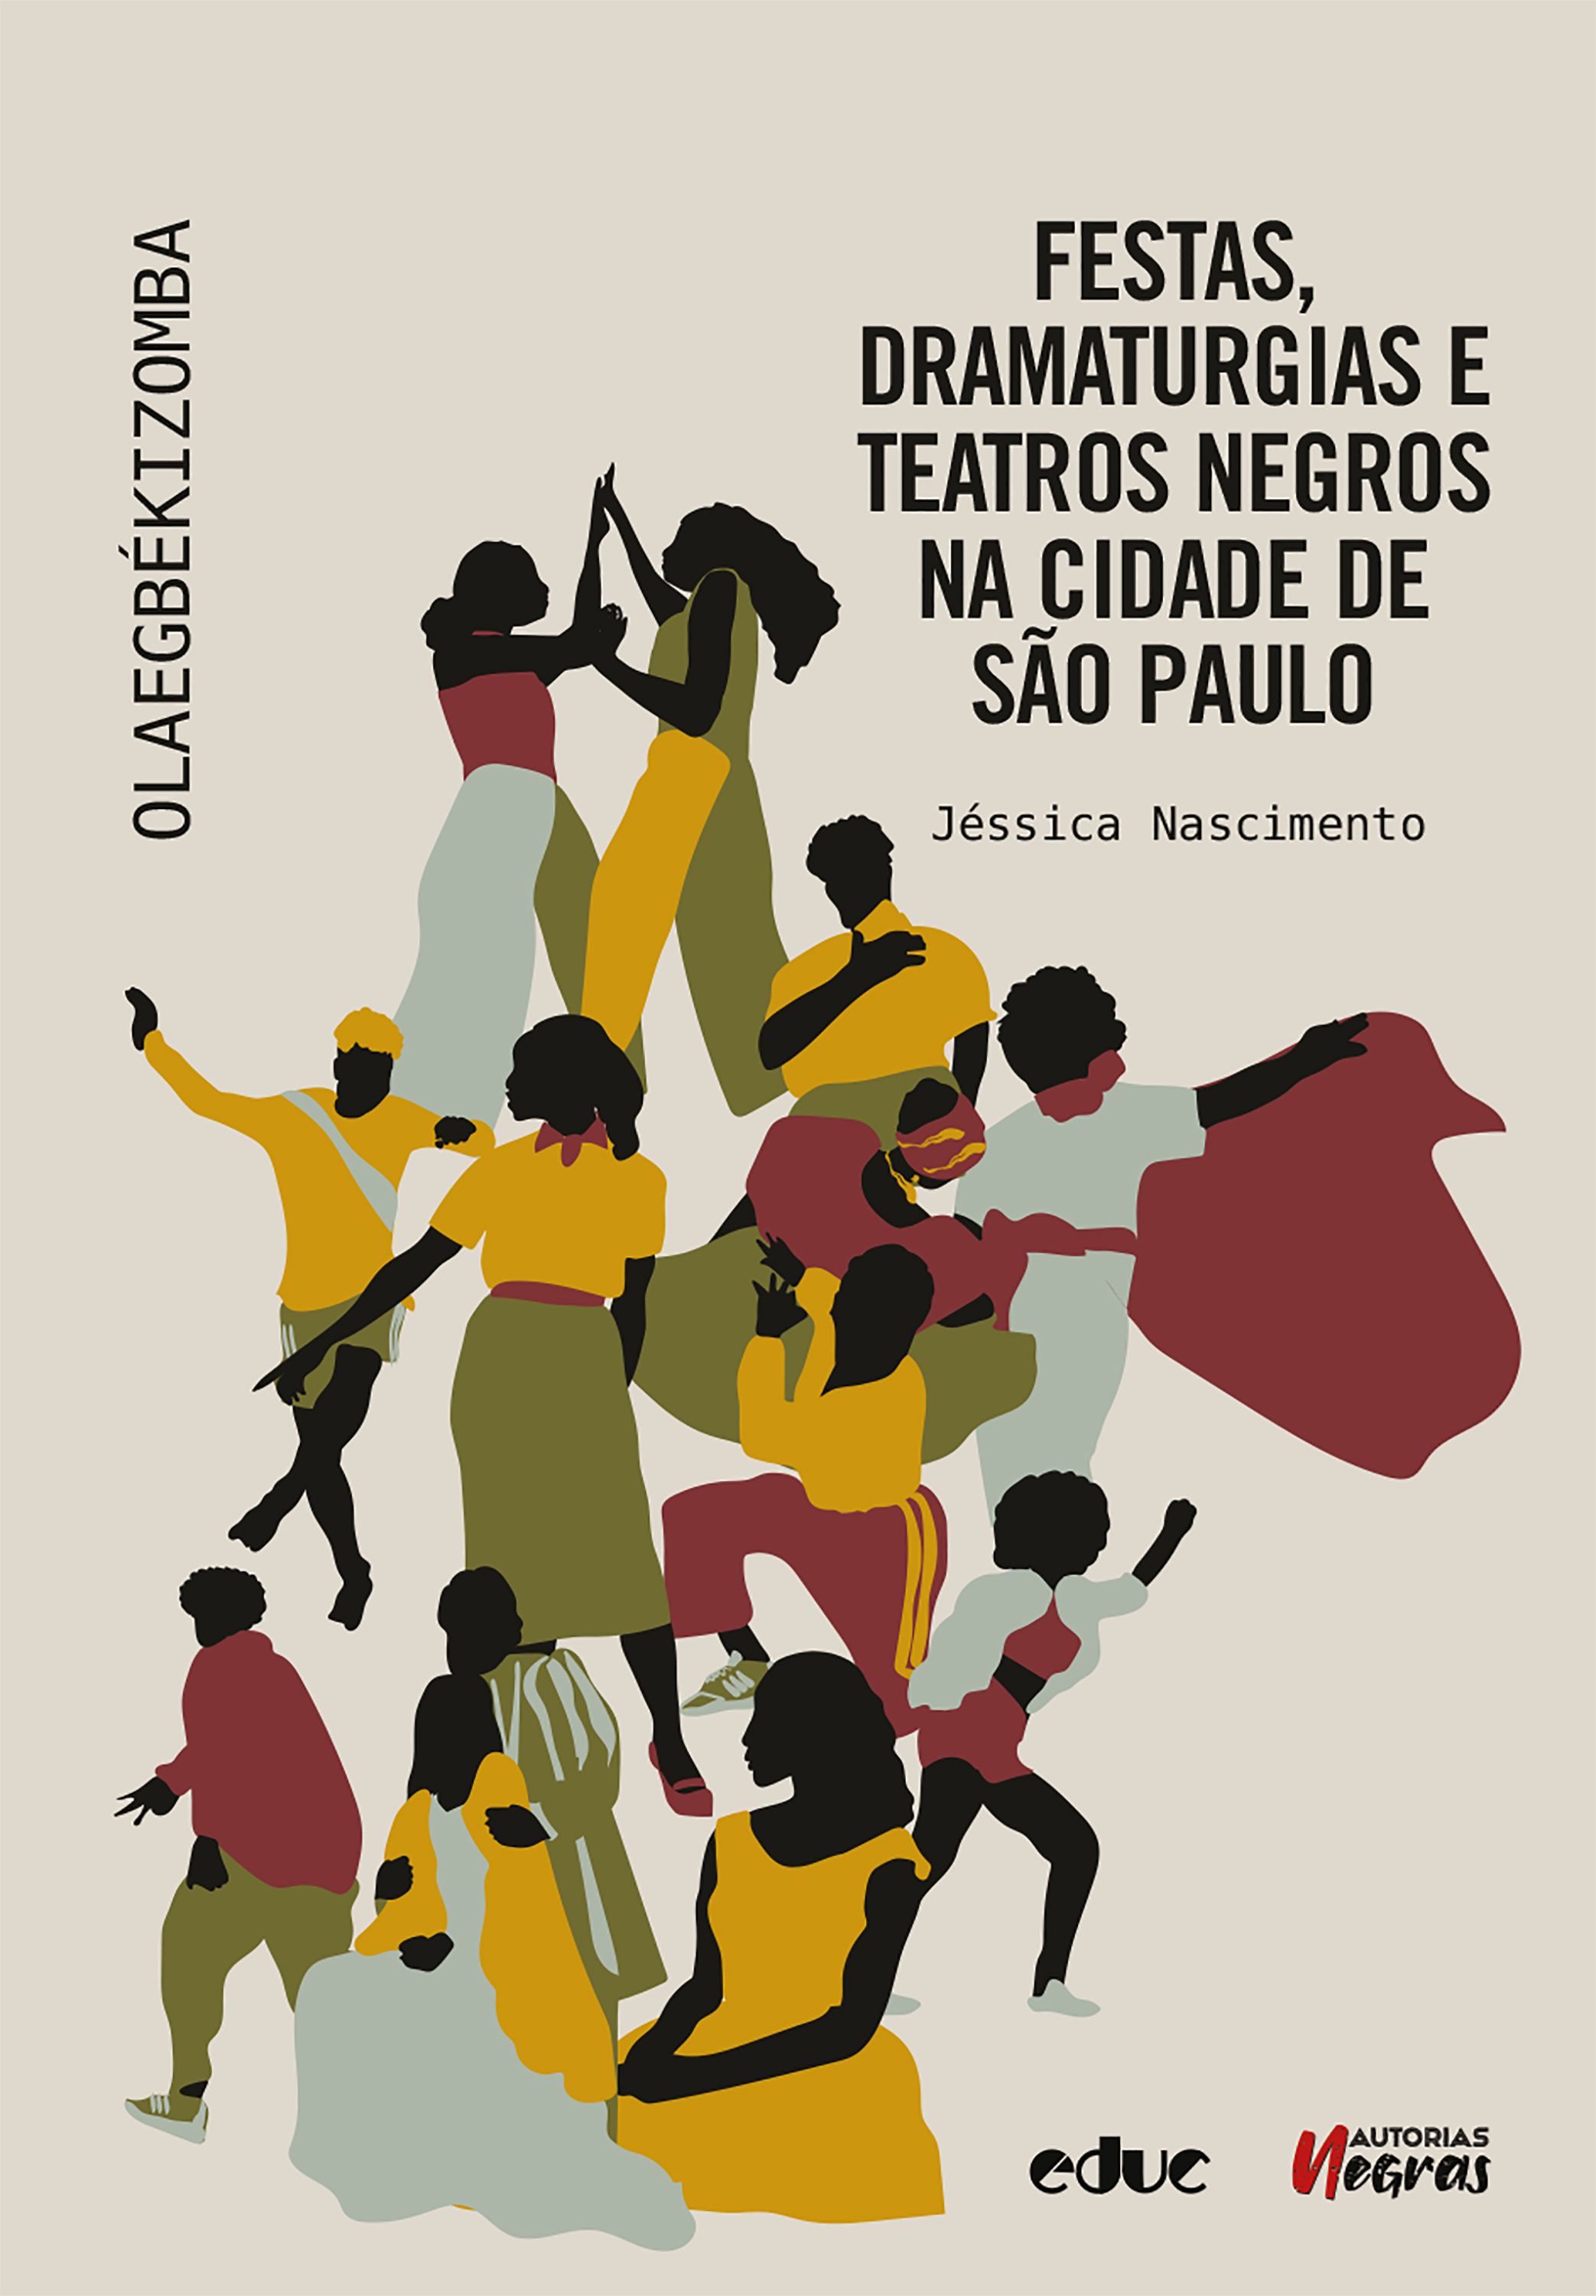 Festas, dramaturgias e teatros negros na cidade de São Paulo